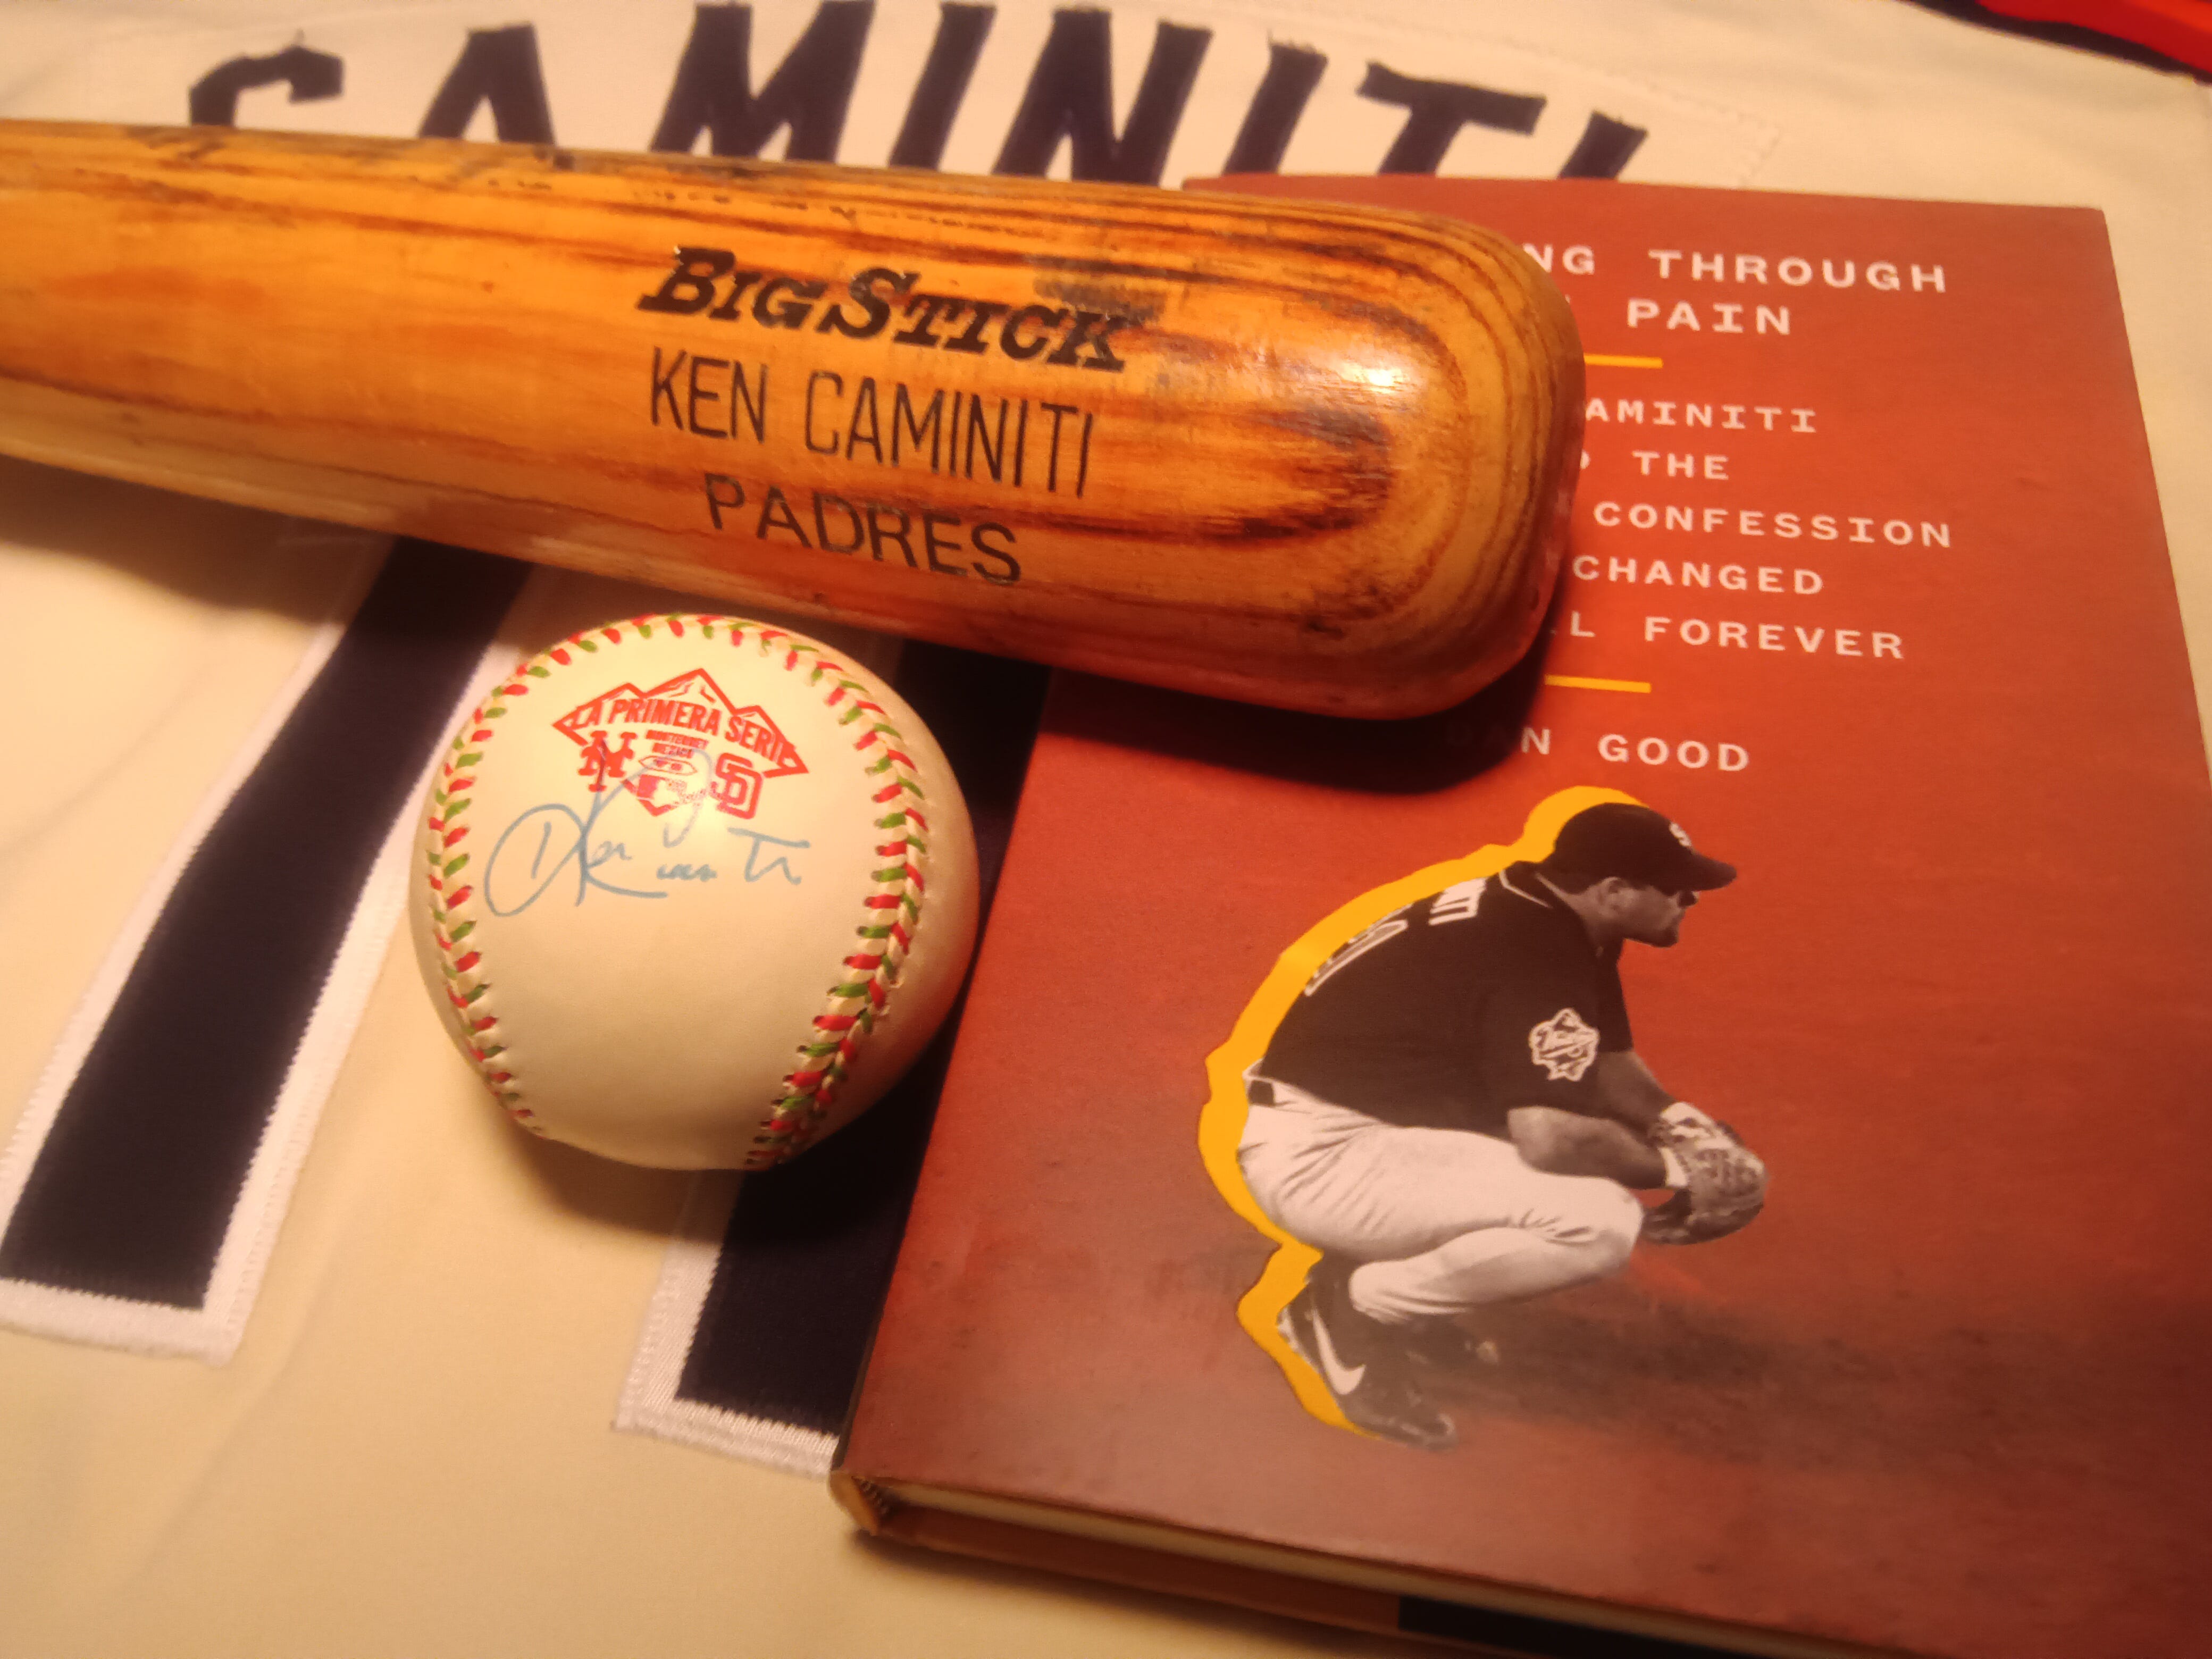 Bradenton Times coverage: 'MLB steroid era personalized in Caminiti book